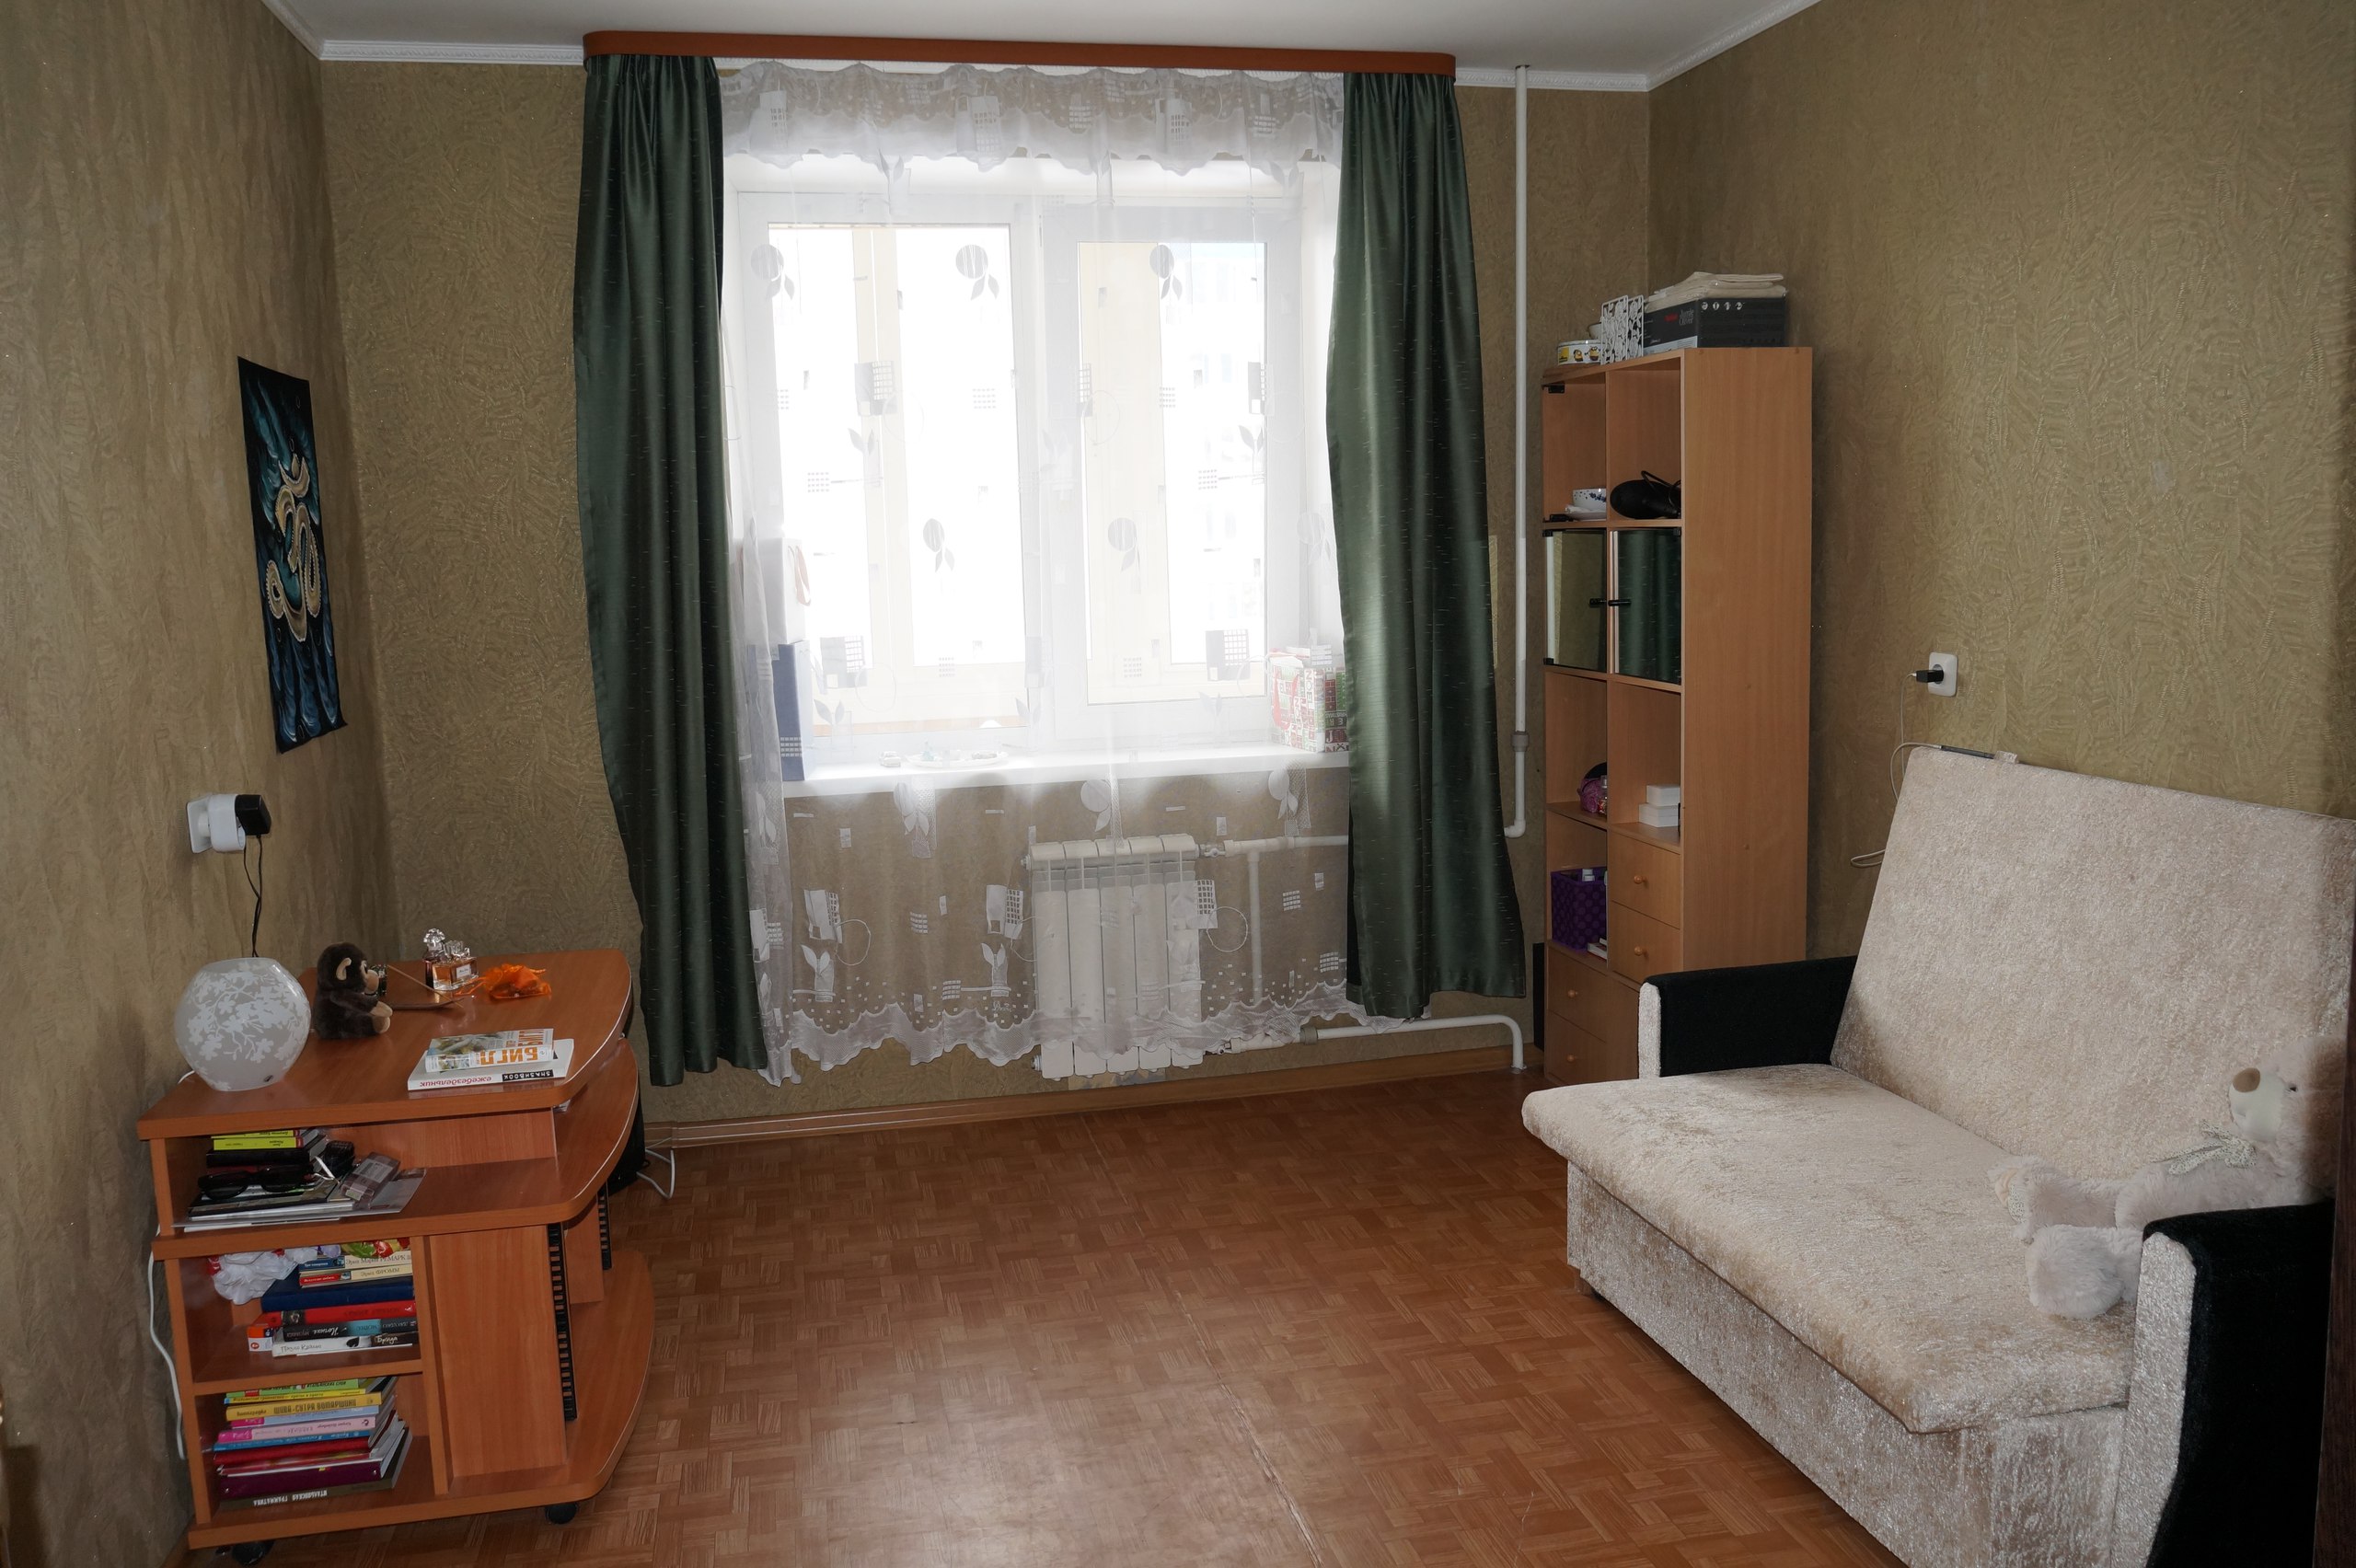 Купить комнату в спб московская. Комната СПБ. Продается комната. Вторичное жилье комната. Комната в общежитии от собственника.